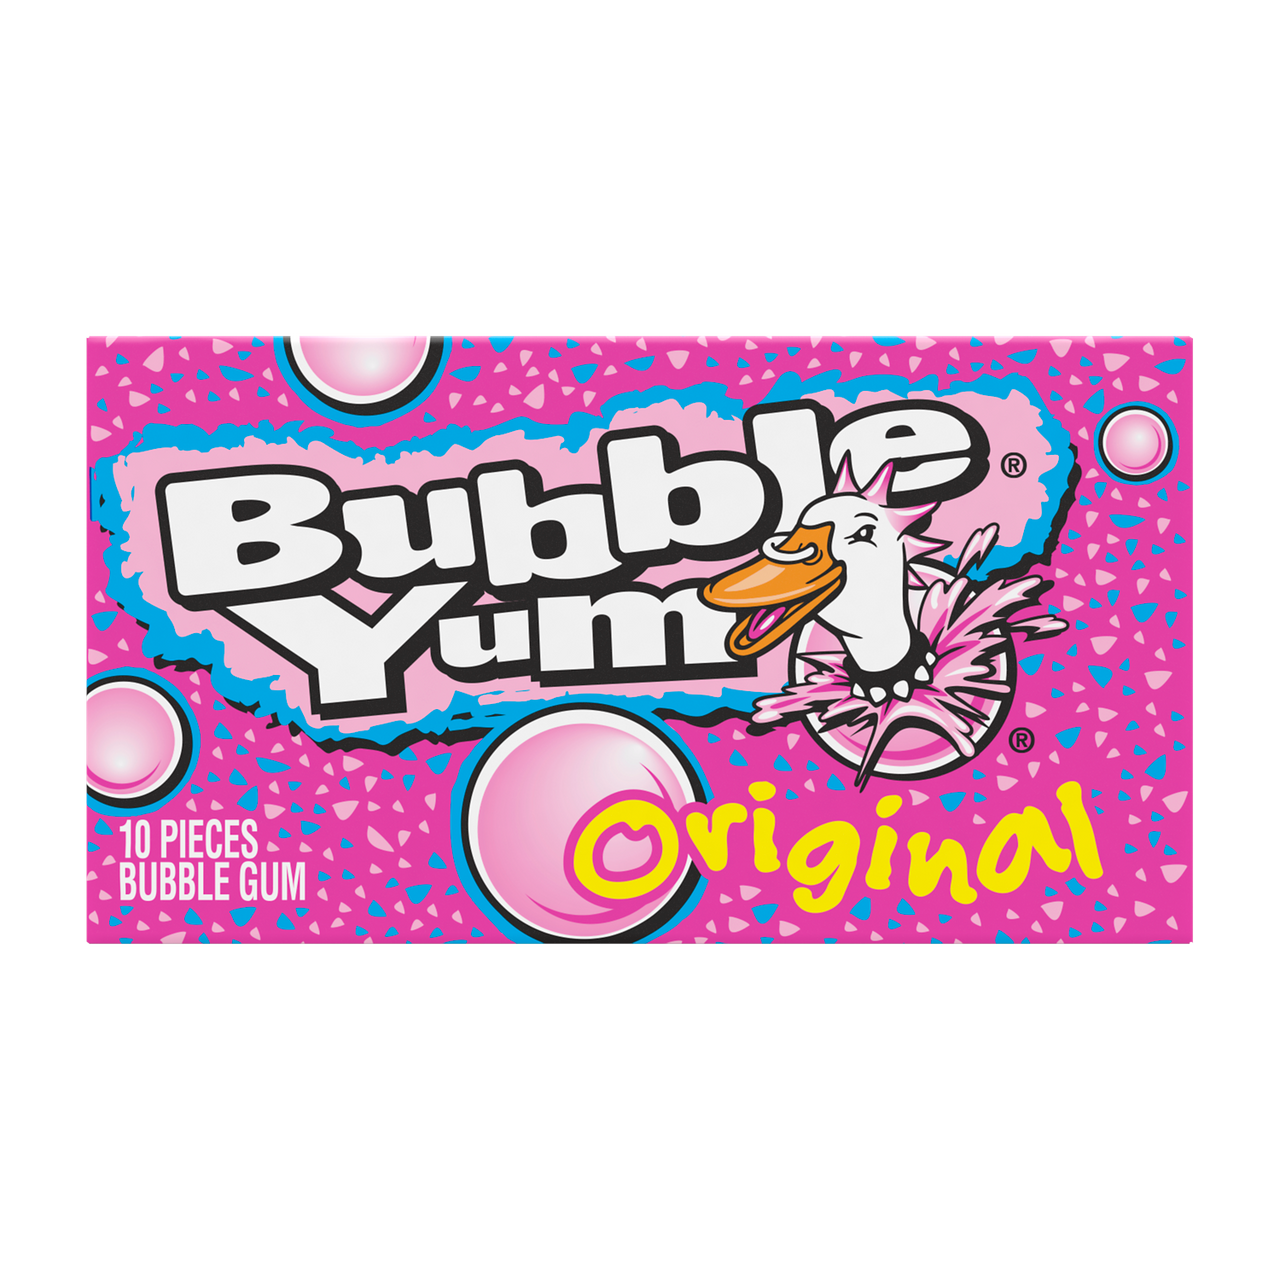 Bubble Yum Original Bubble Gum